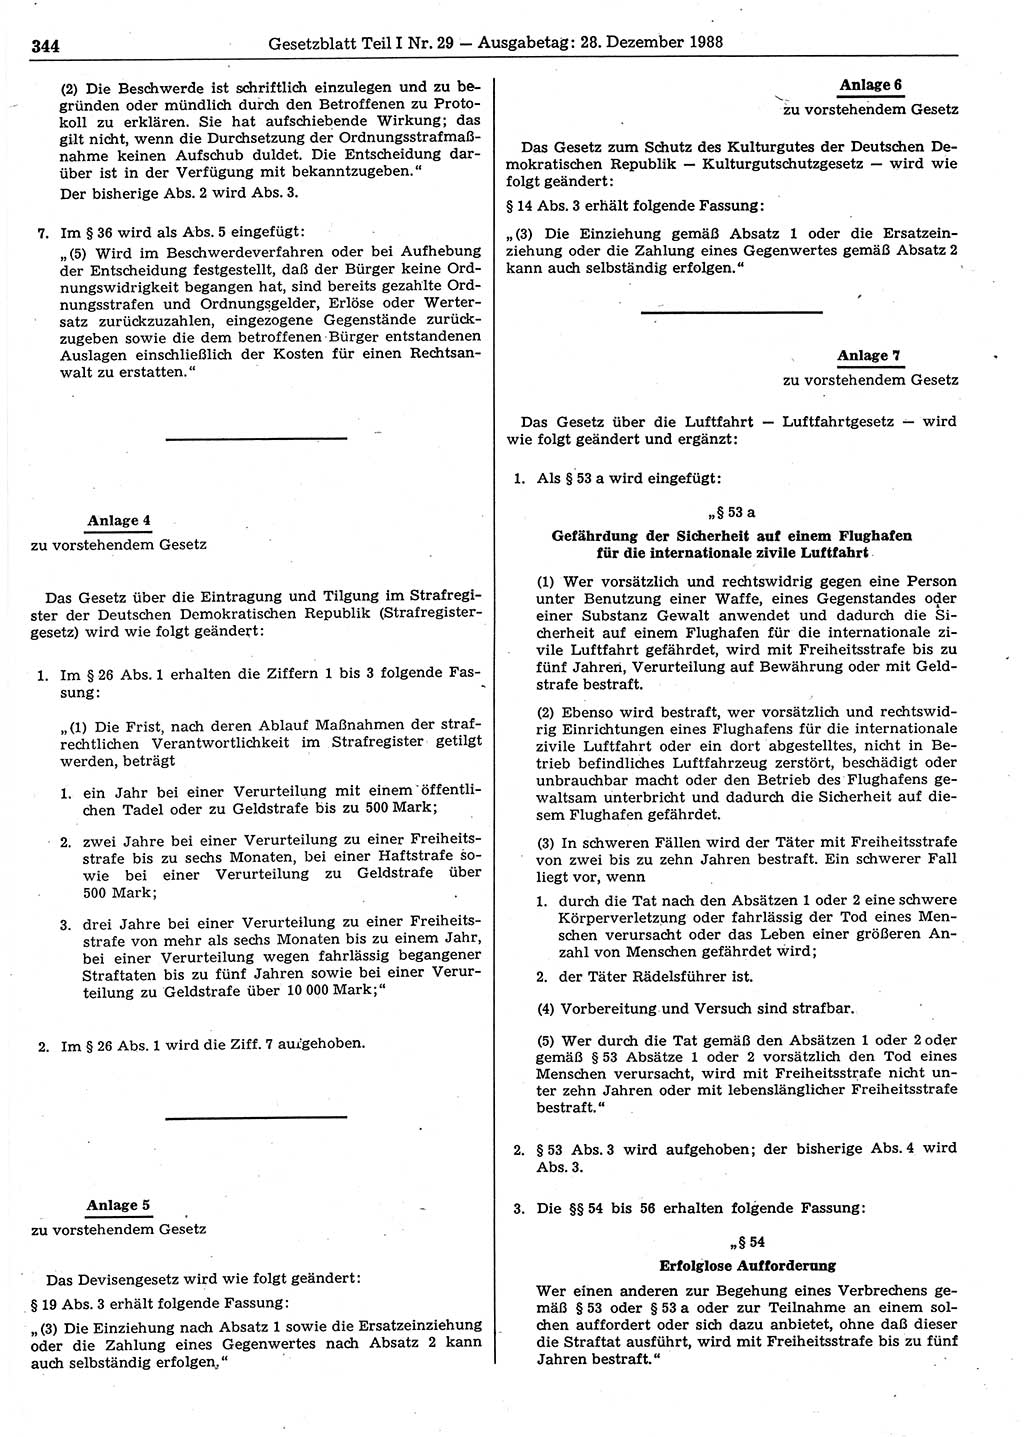 Gesetzblatt (GBl.) der Deutschen Demokratischen Republik (DDR) Teil Ⅰ 1988, Seite 344 (GBl. DDR Ⅰ 1988, S. 344)